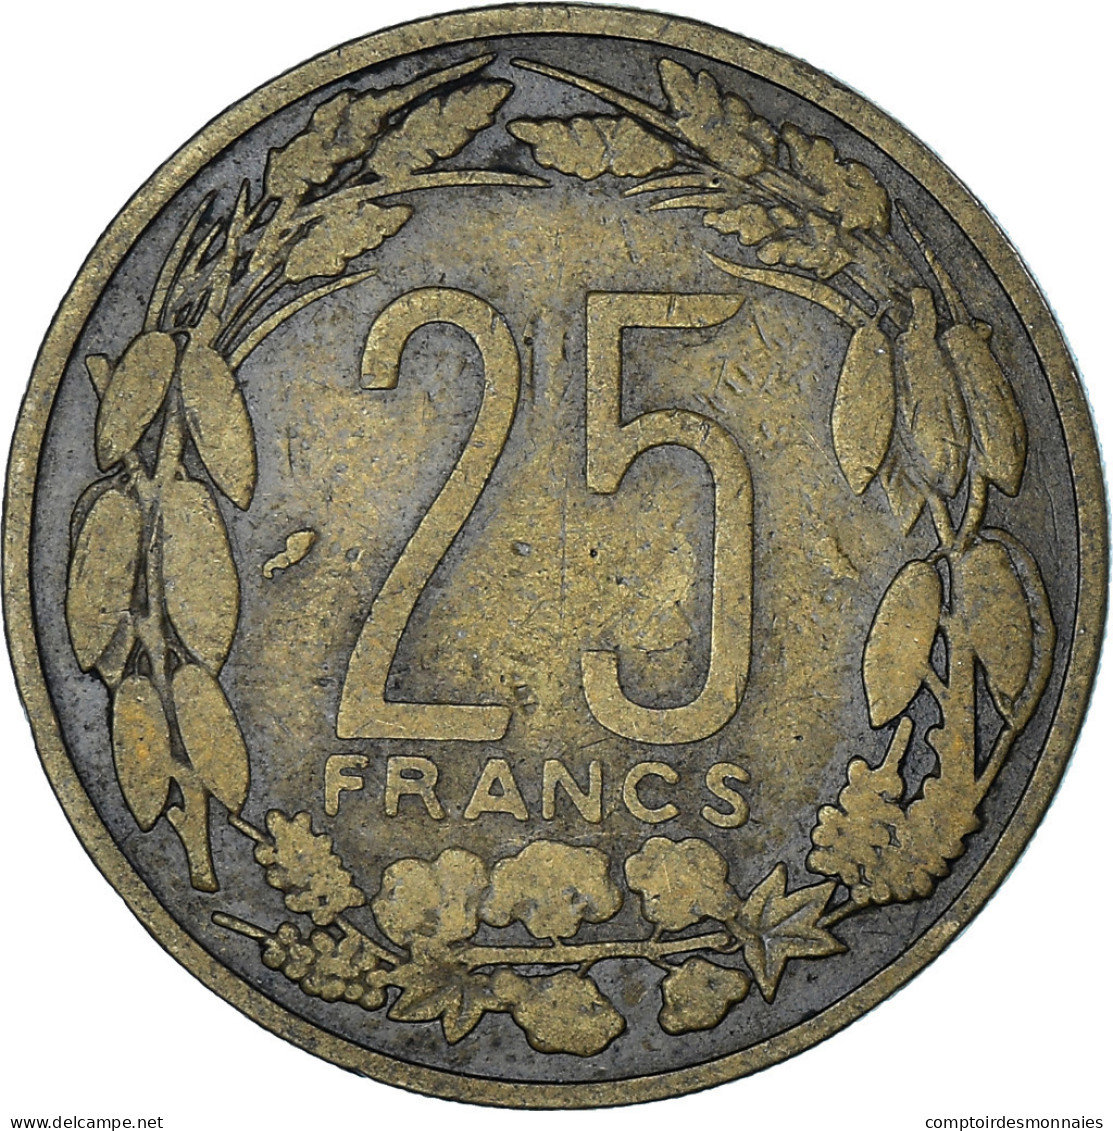 Monnaie, États De L'Afrique équatoriale, 25 Francs, 1962, Paris, TB+ - Camerun